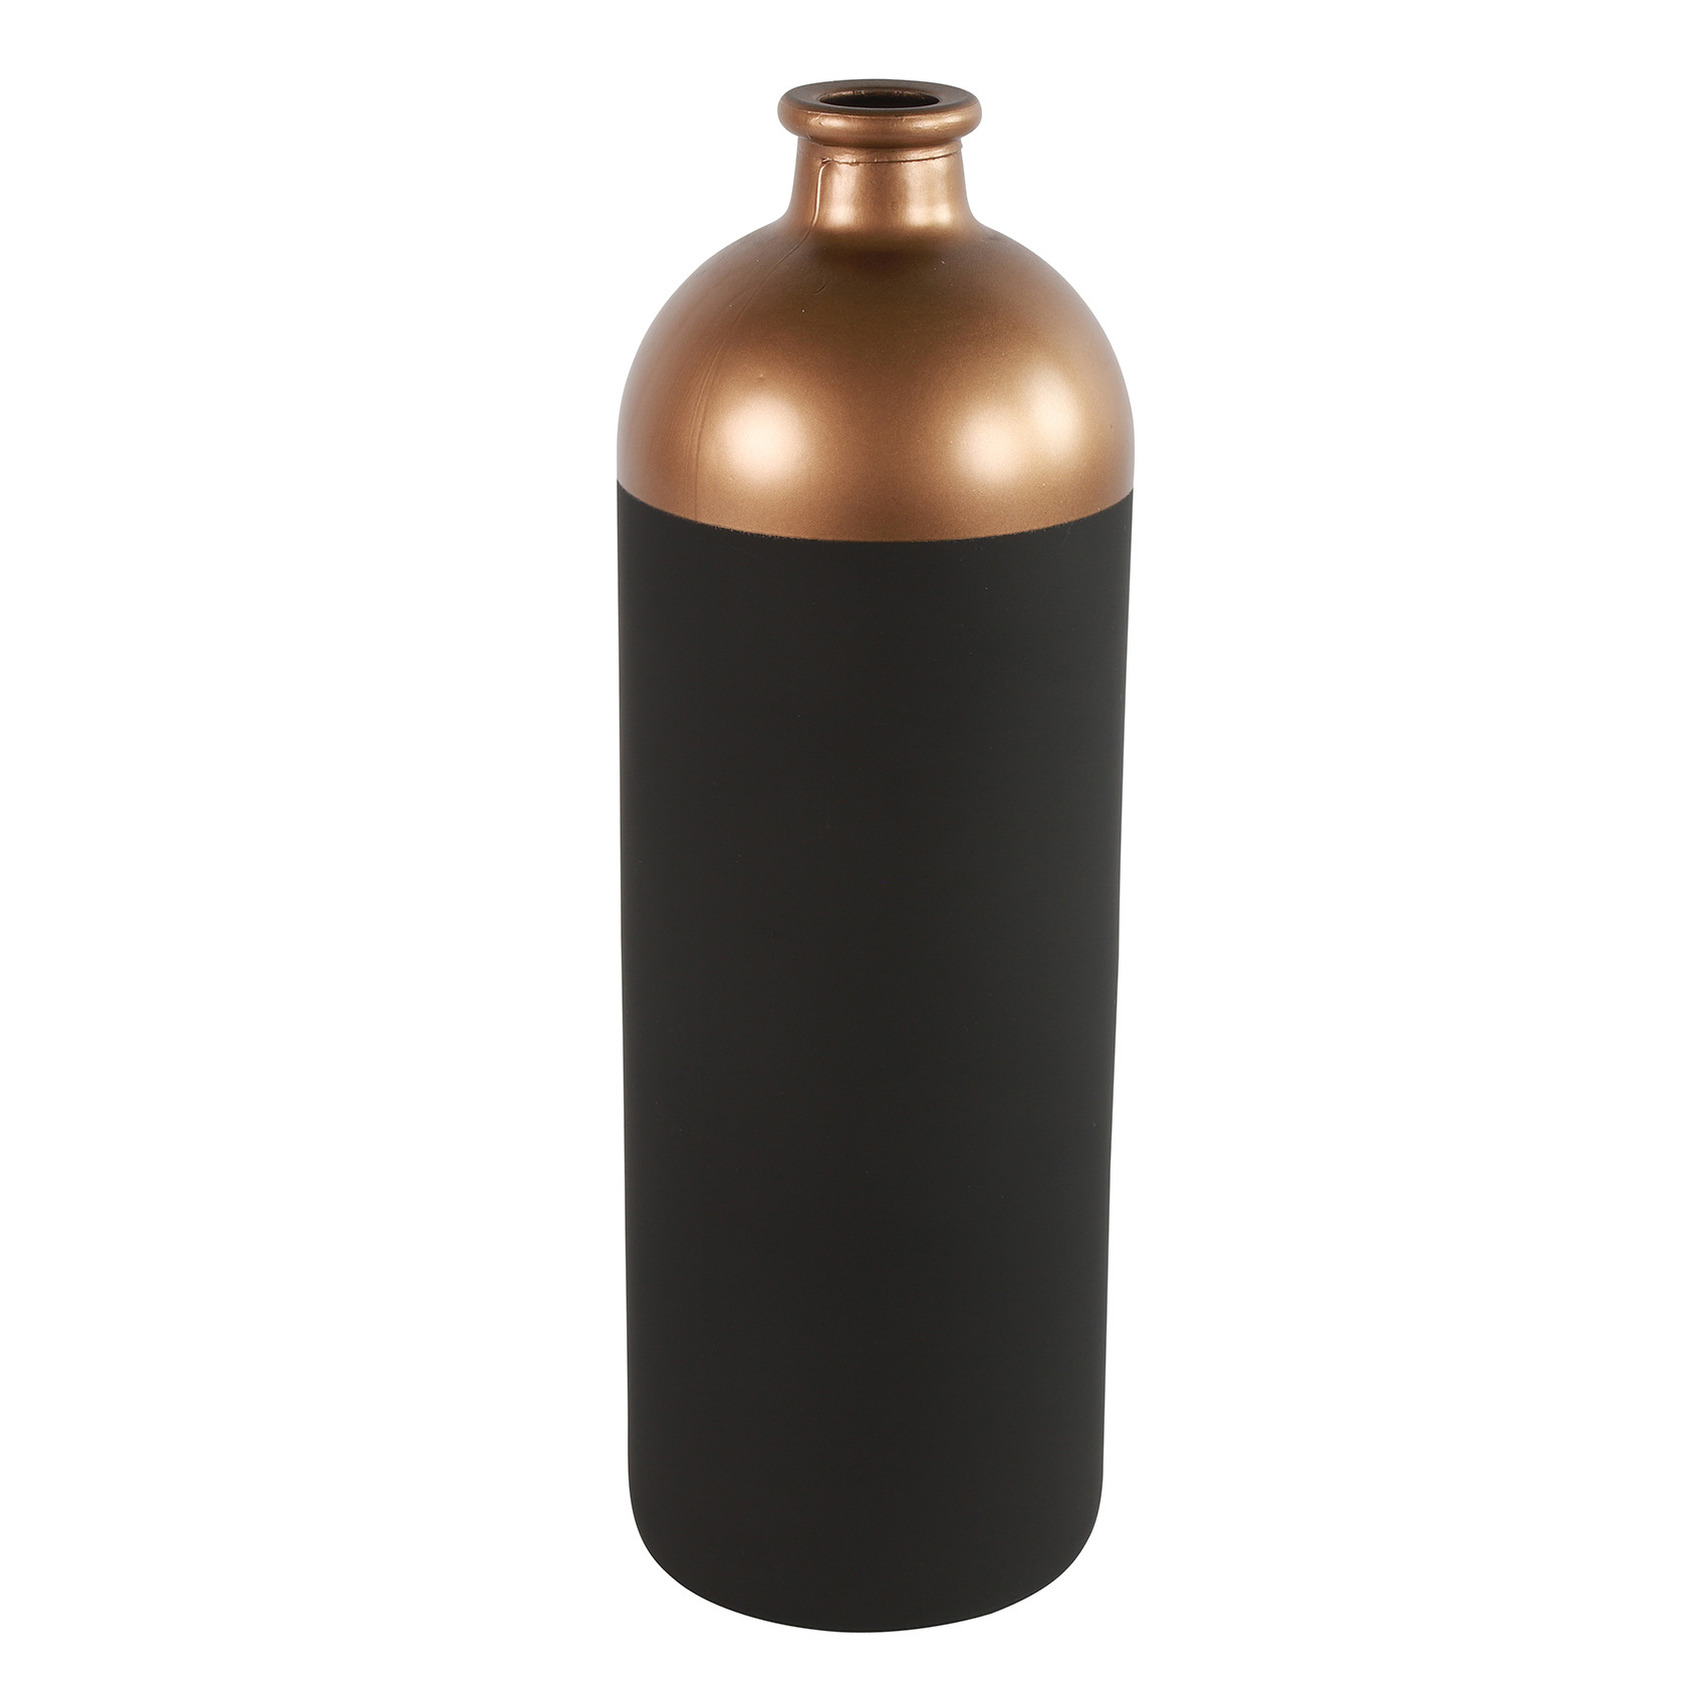 Countryfield Bloemen of deco vaas zwart-koper glas luxe fles vorm D13 x H41 cm